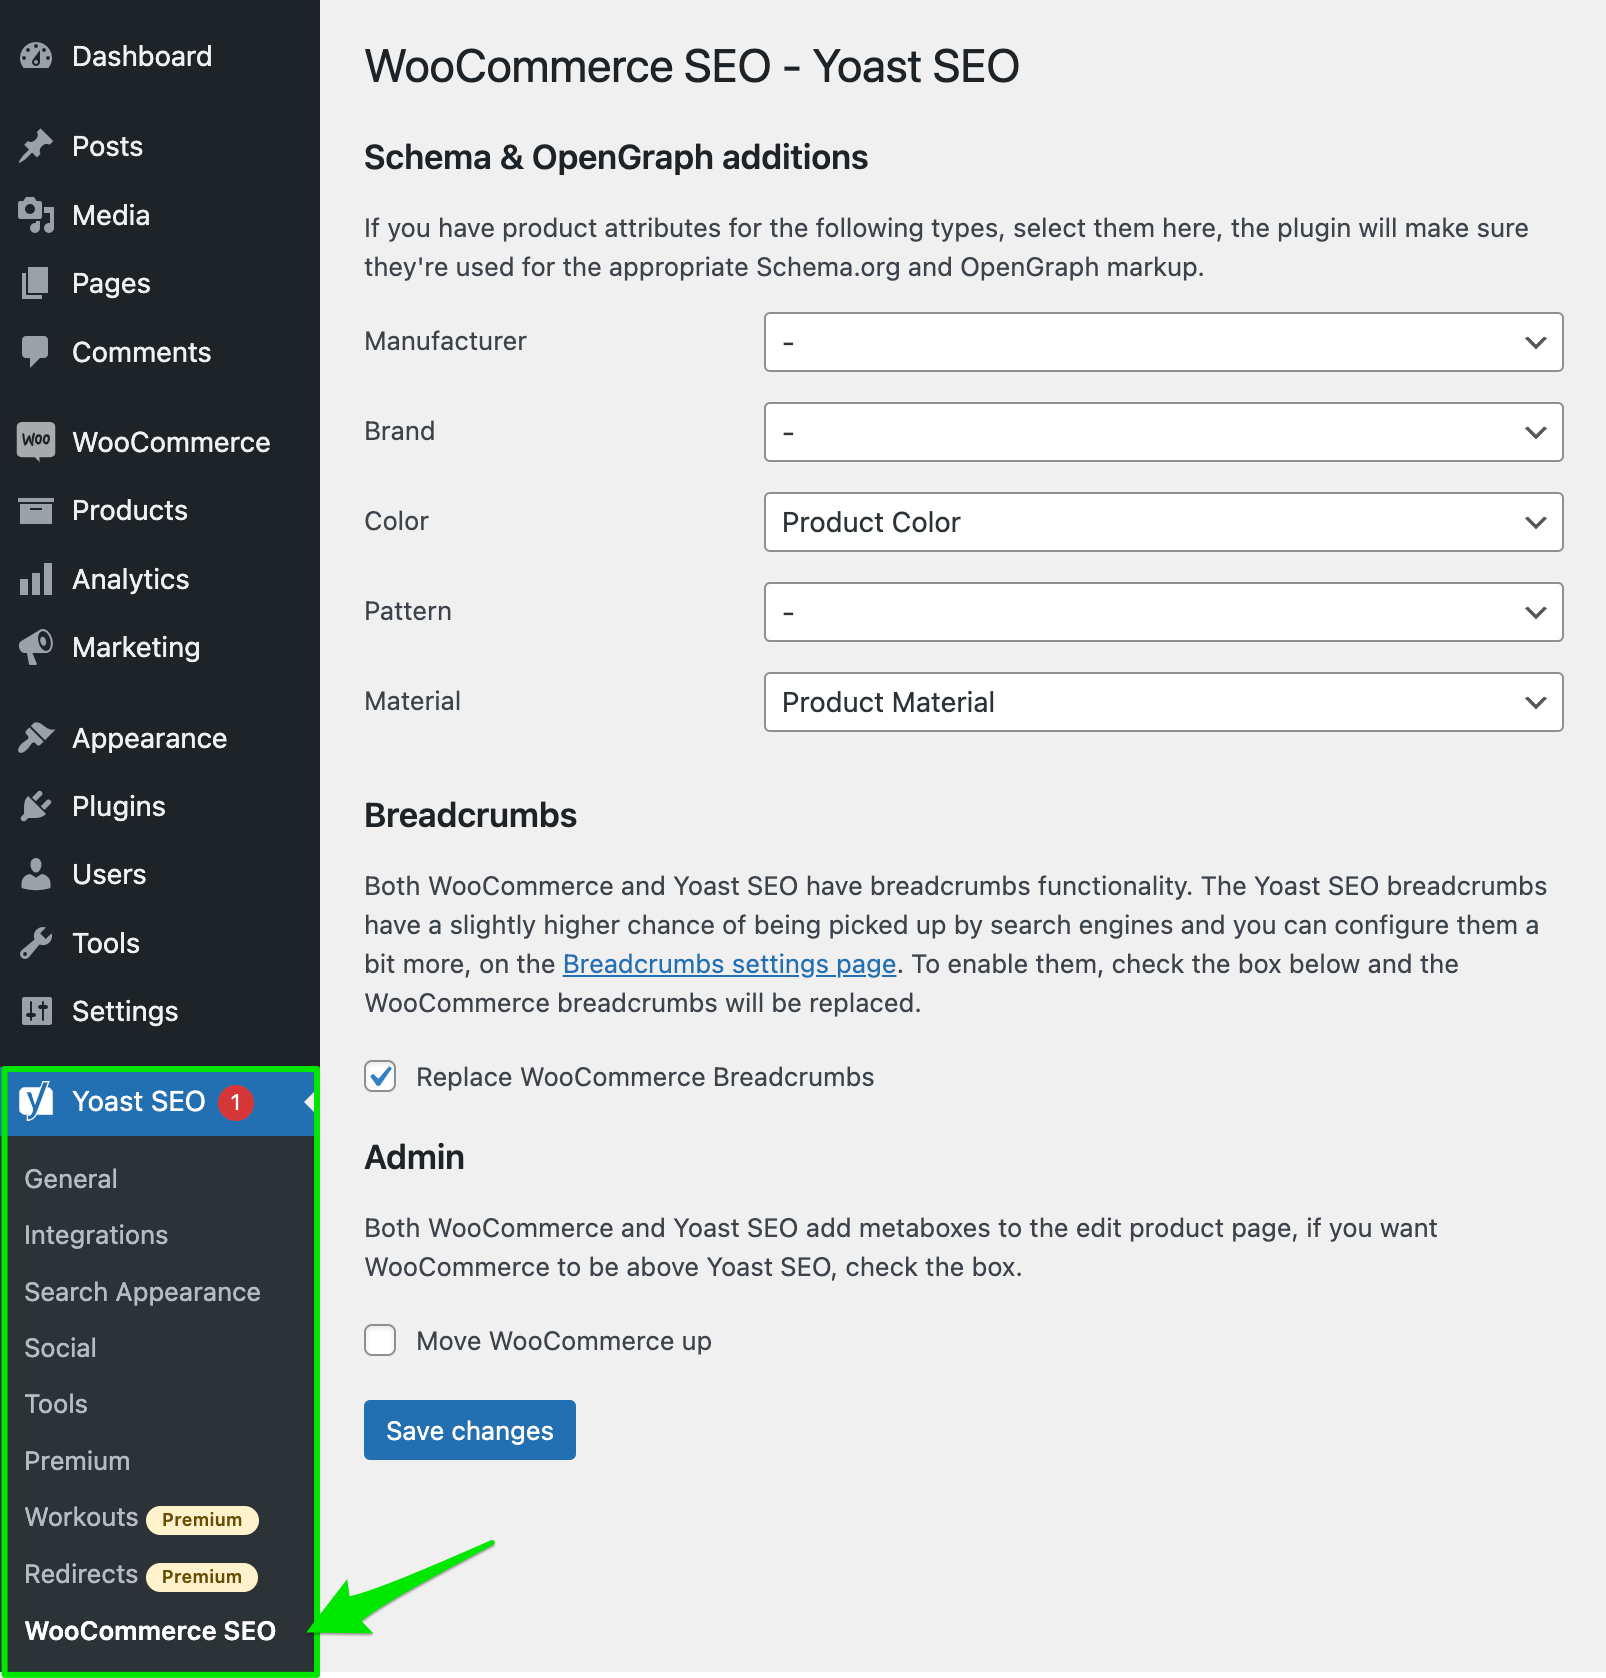 Screenshot showing the WooCommerce SEO settings in Yoast SEO